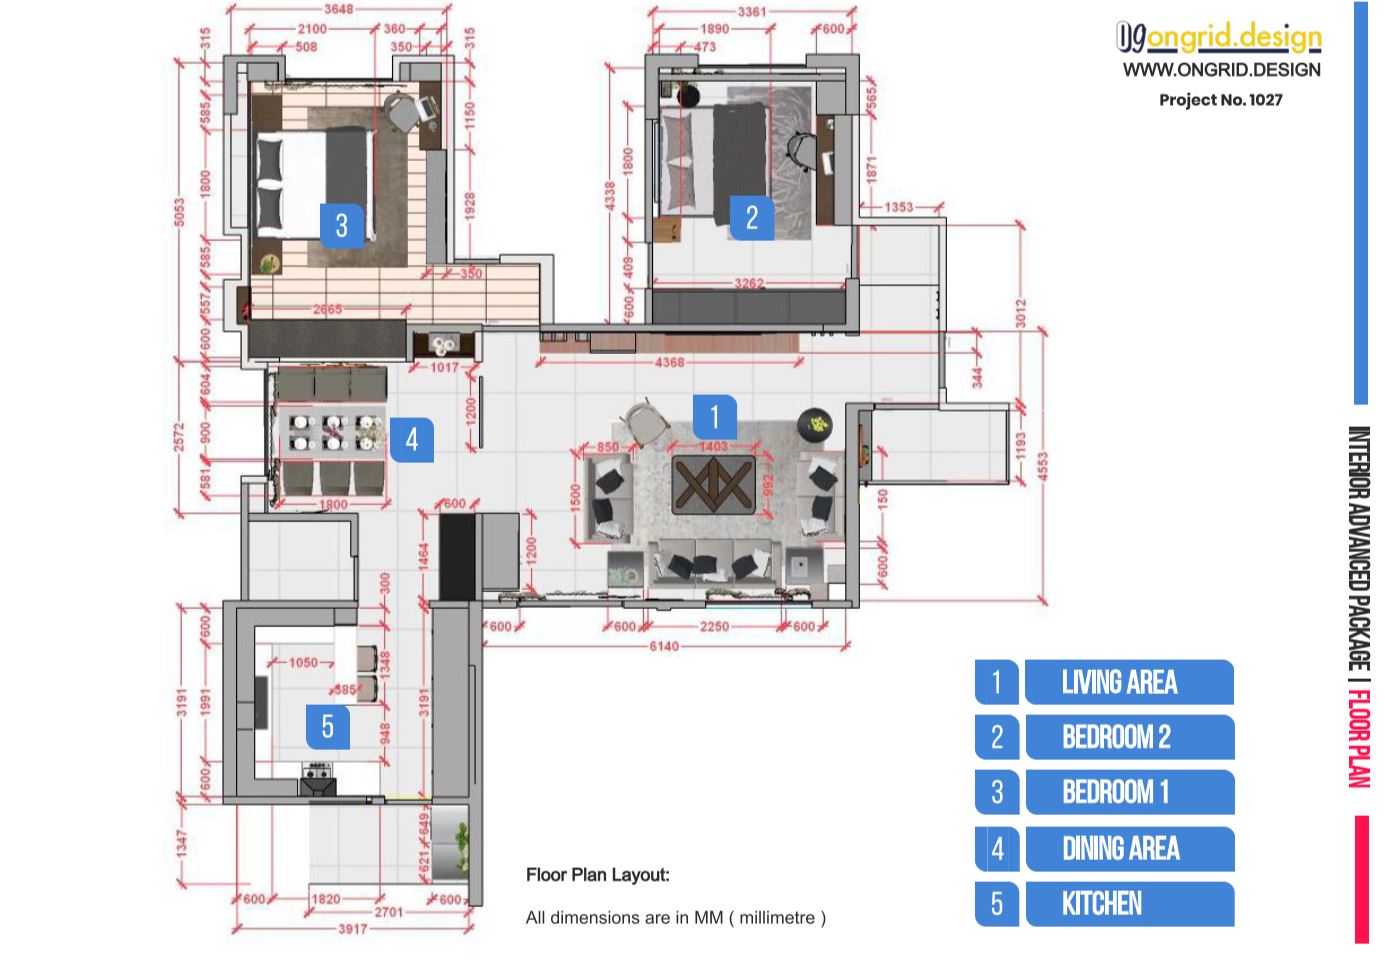 ongrid design interior design published project floor plan